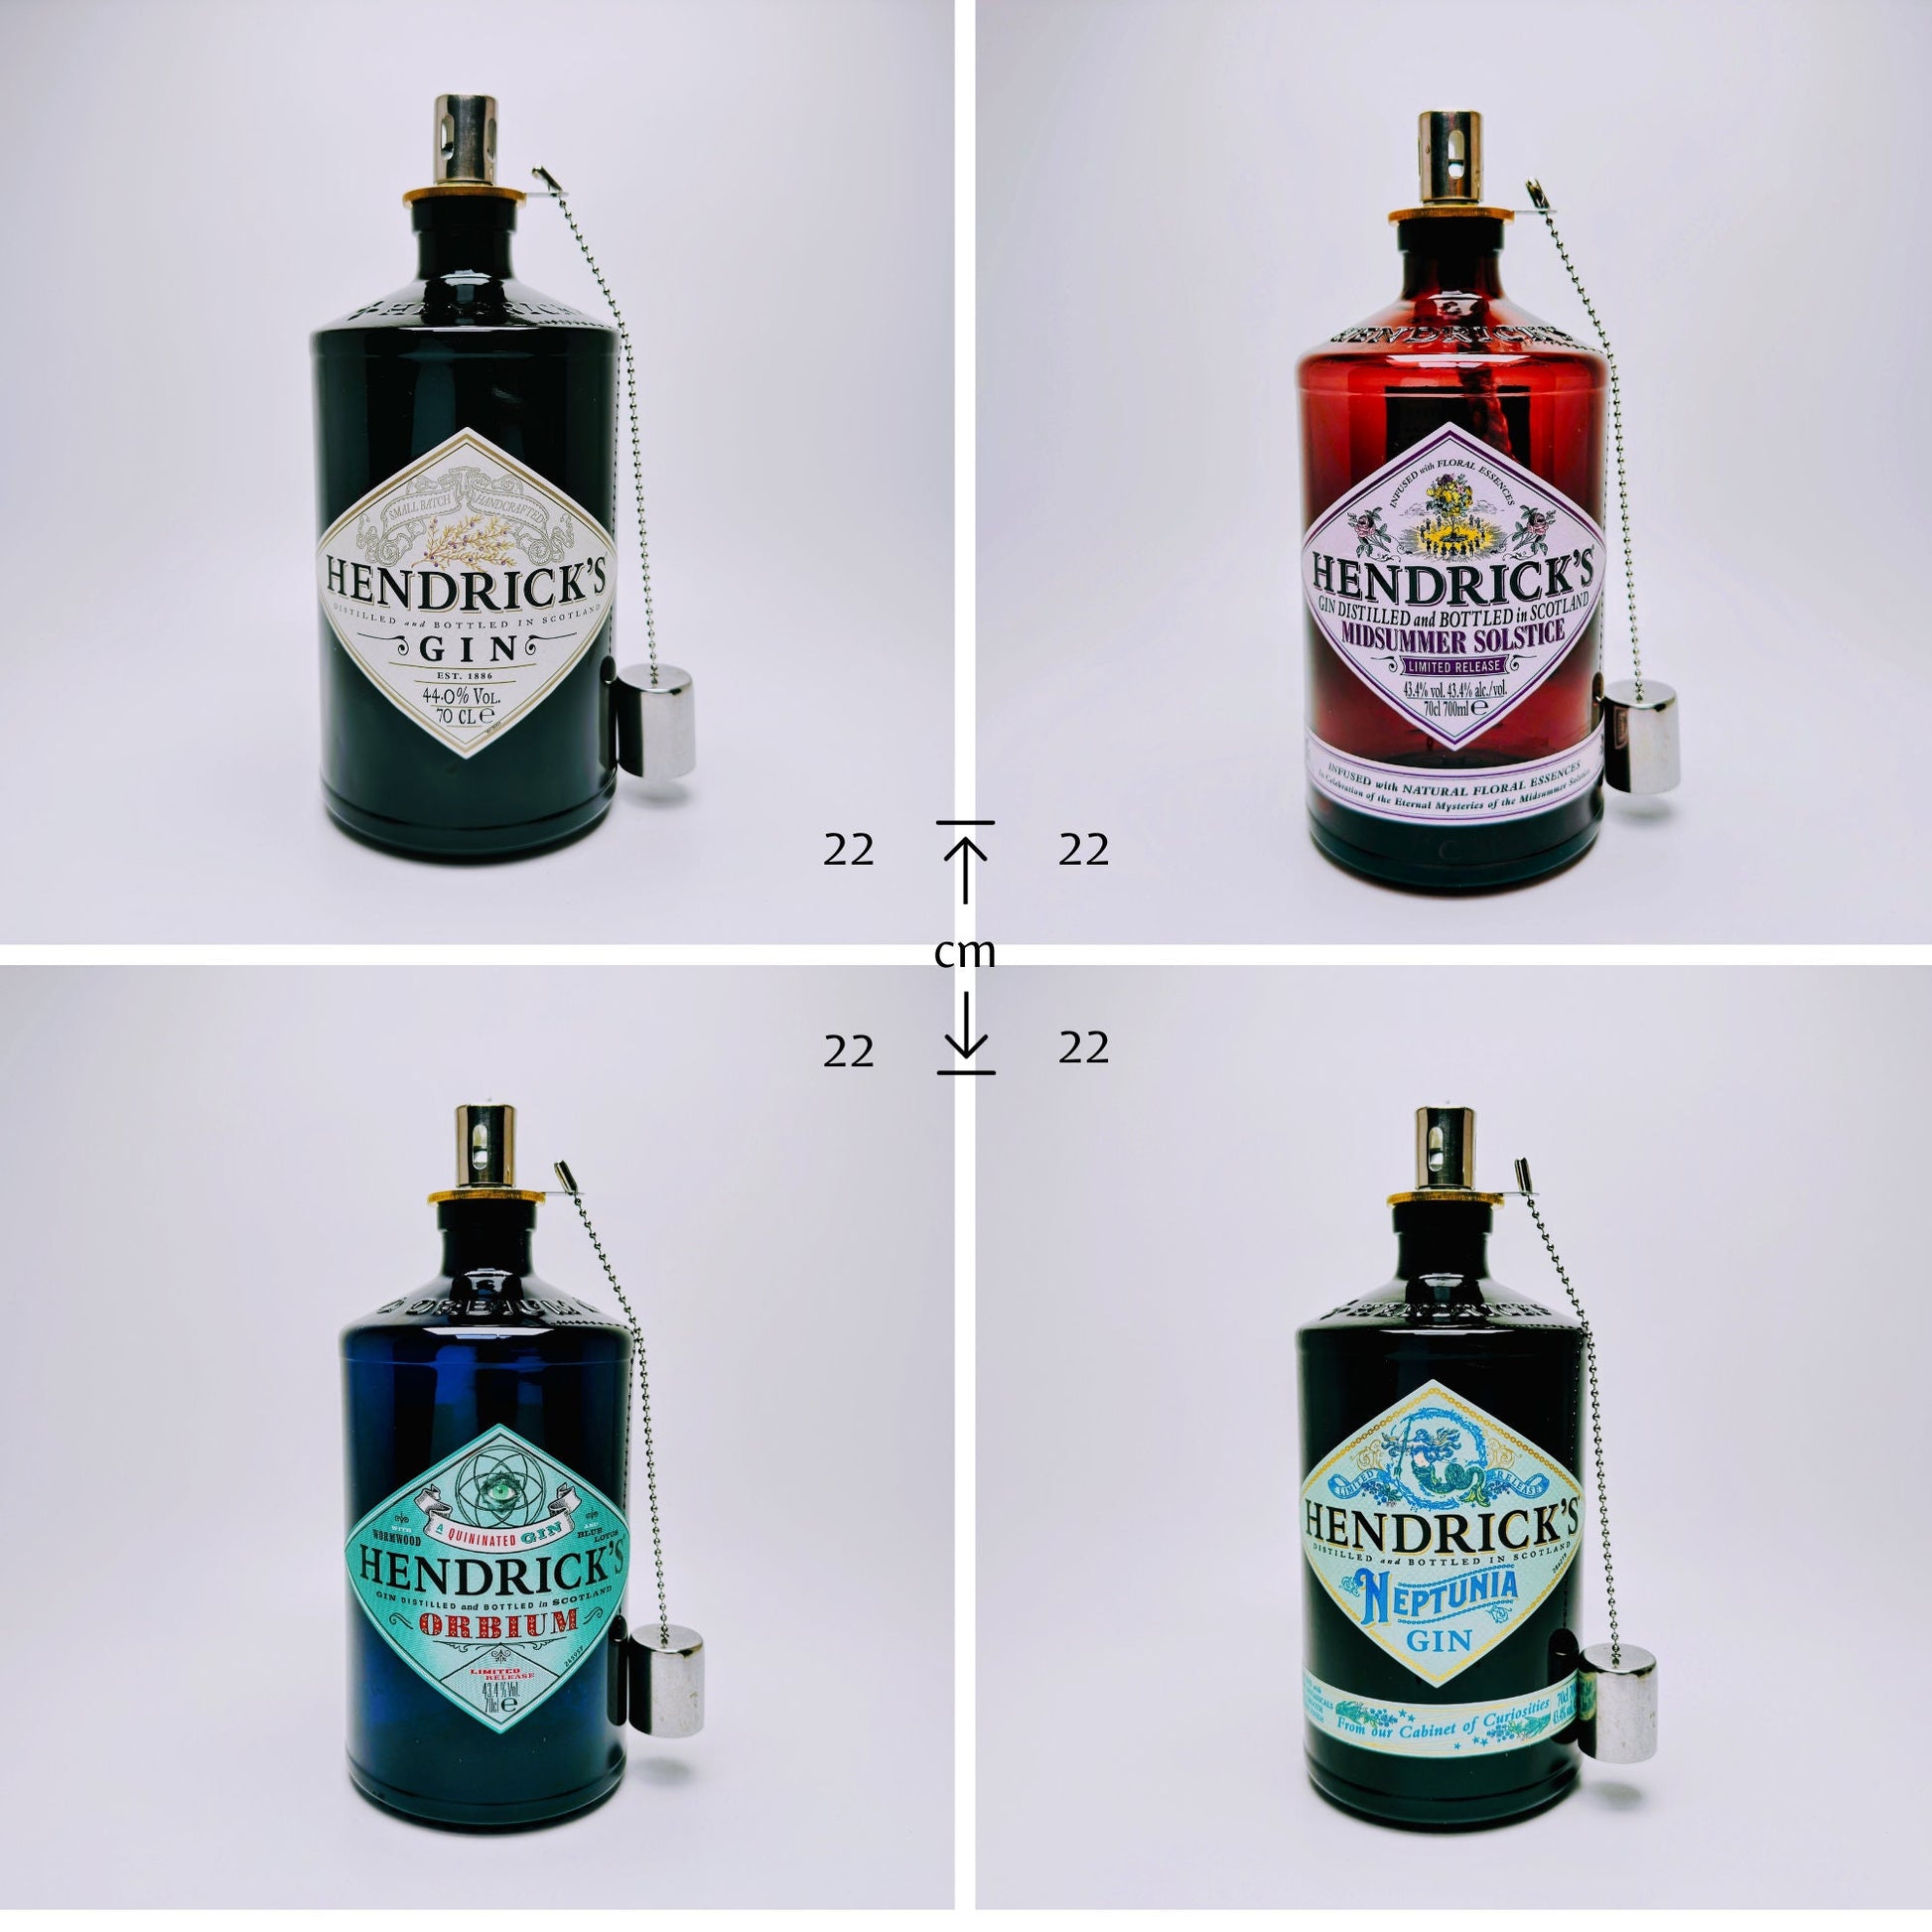 Gin Öllampe "Hendricks" | Handgemachte Öllampe aus Hendricks Gin Flaschen | Upcycling | Handgefertigt | Individuell | Geschenk | Deko